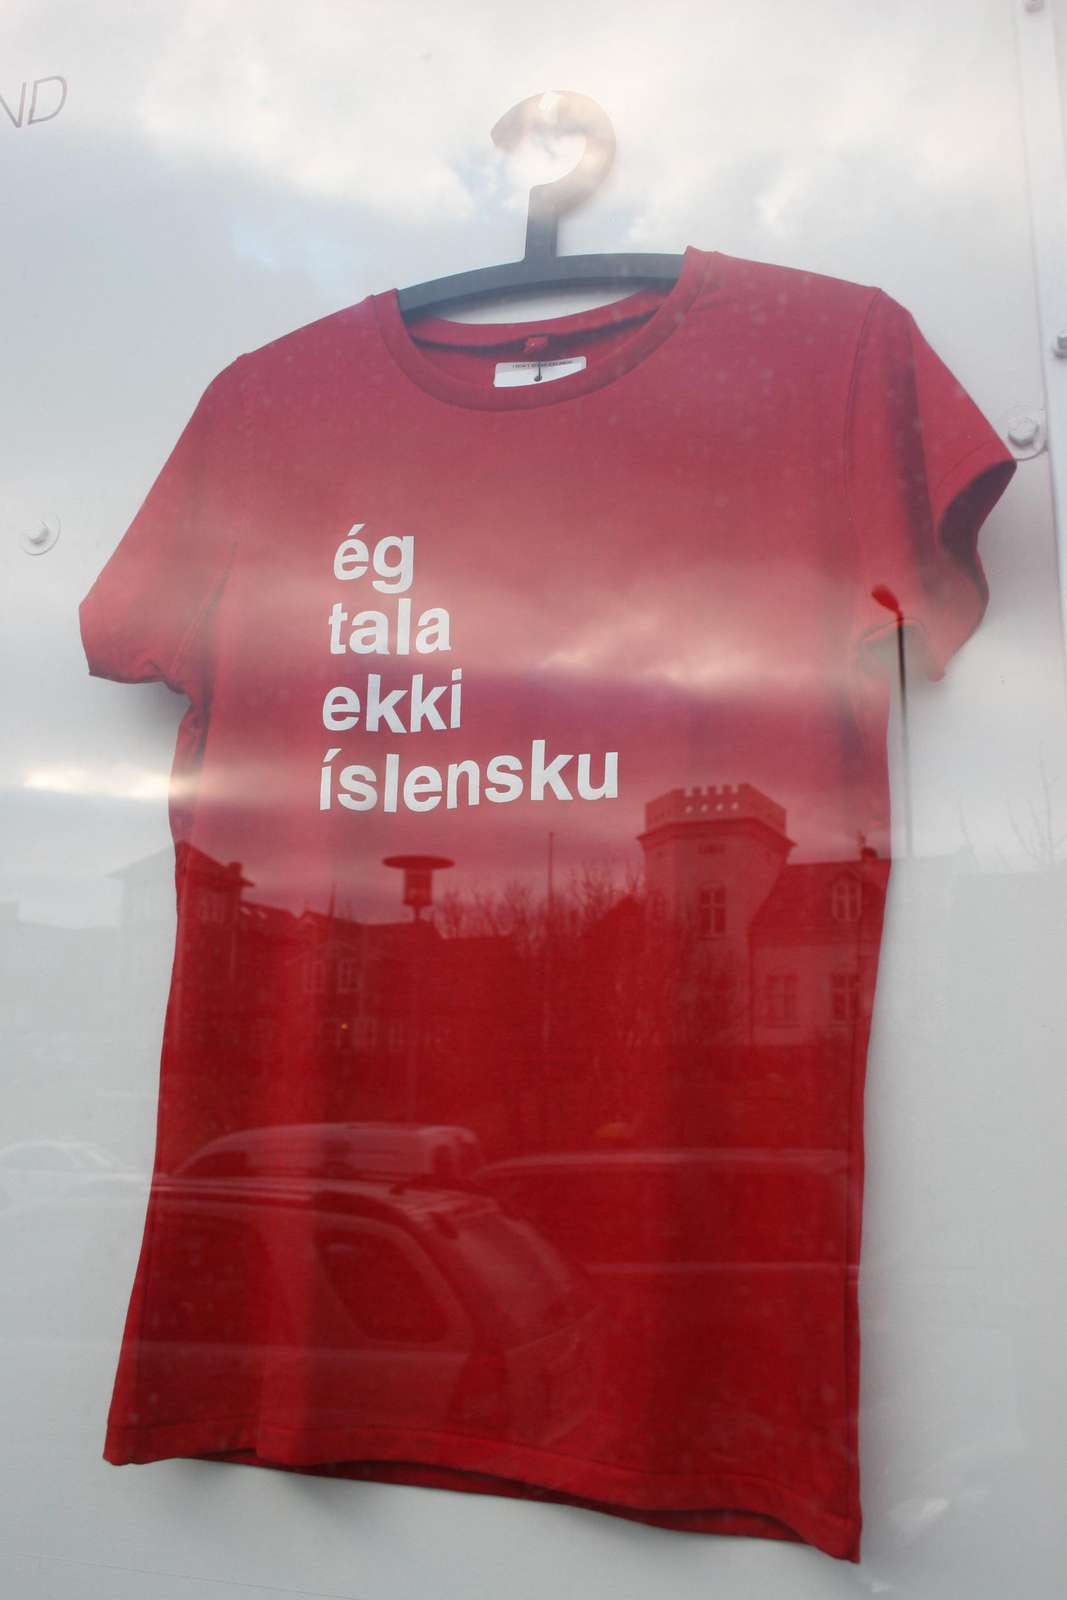 T-shirt: I don't speak Icelandic